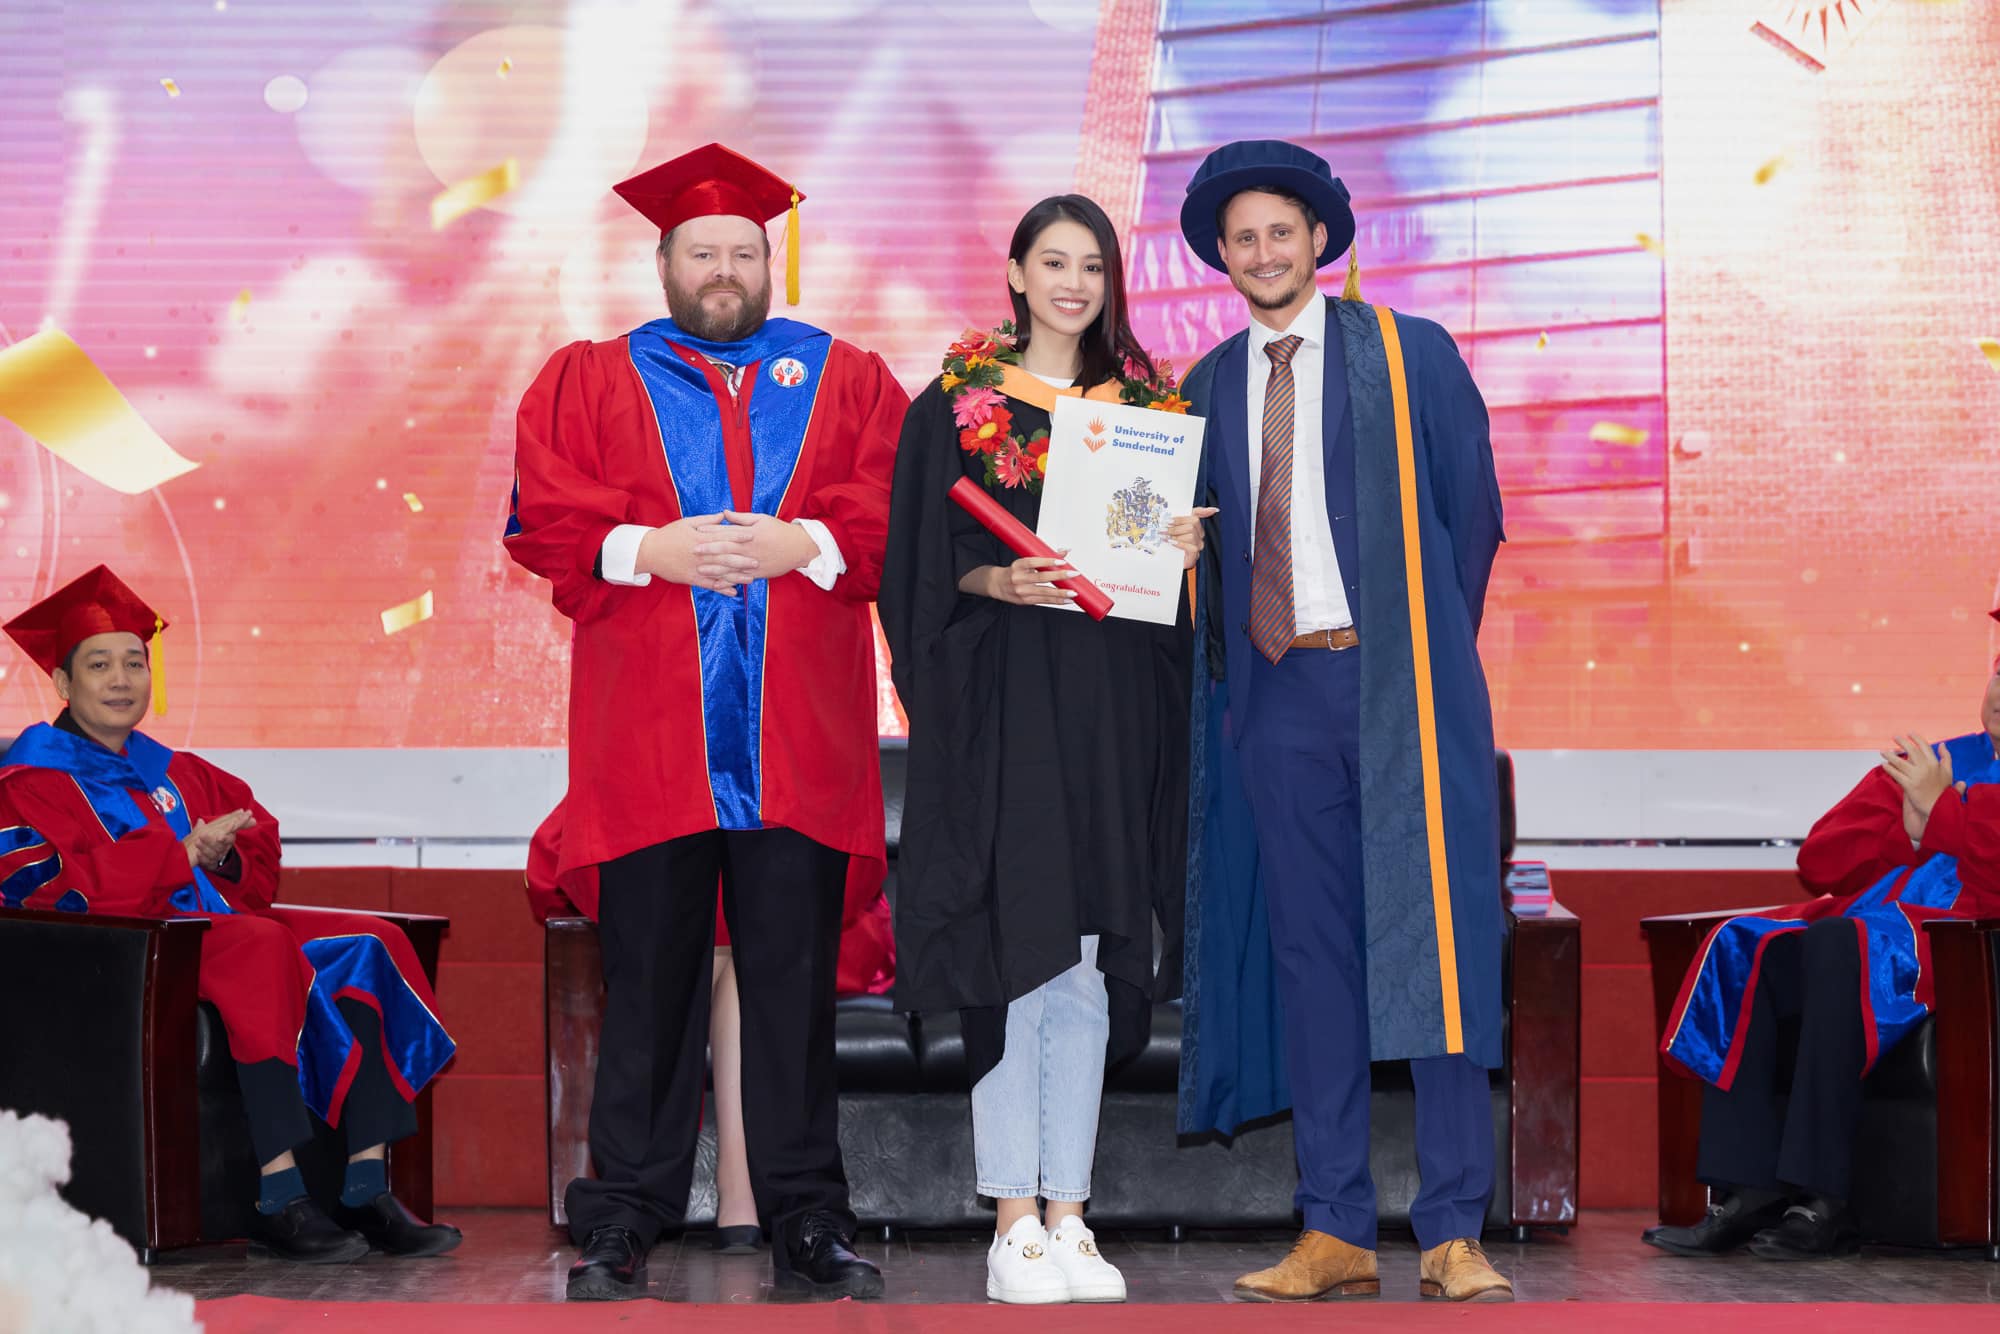 Chuyện làng sao - Hoa hậu Tiểu Vy trong buổi lễ tốt nghiệp đại học (Hình 2).